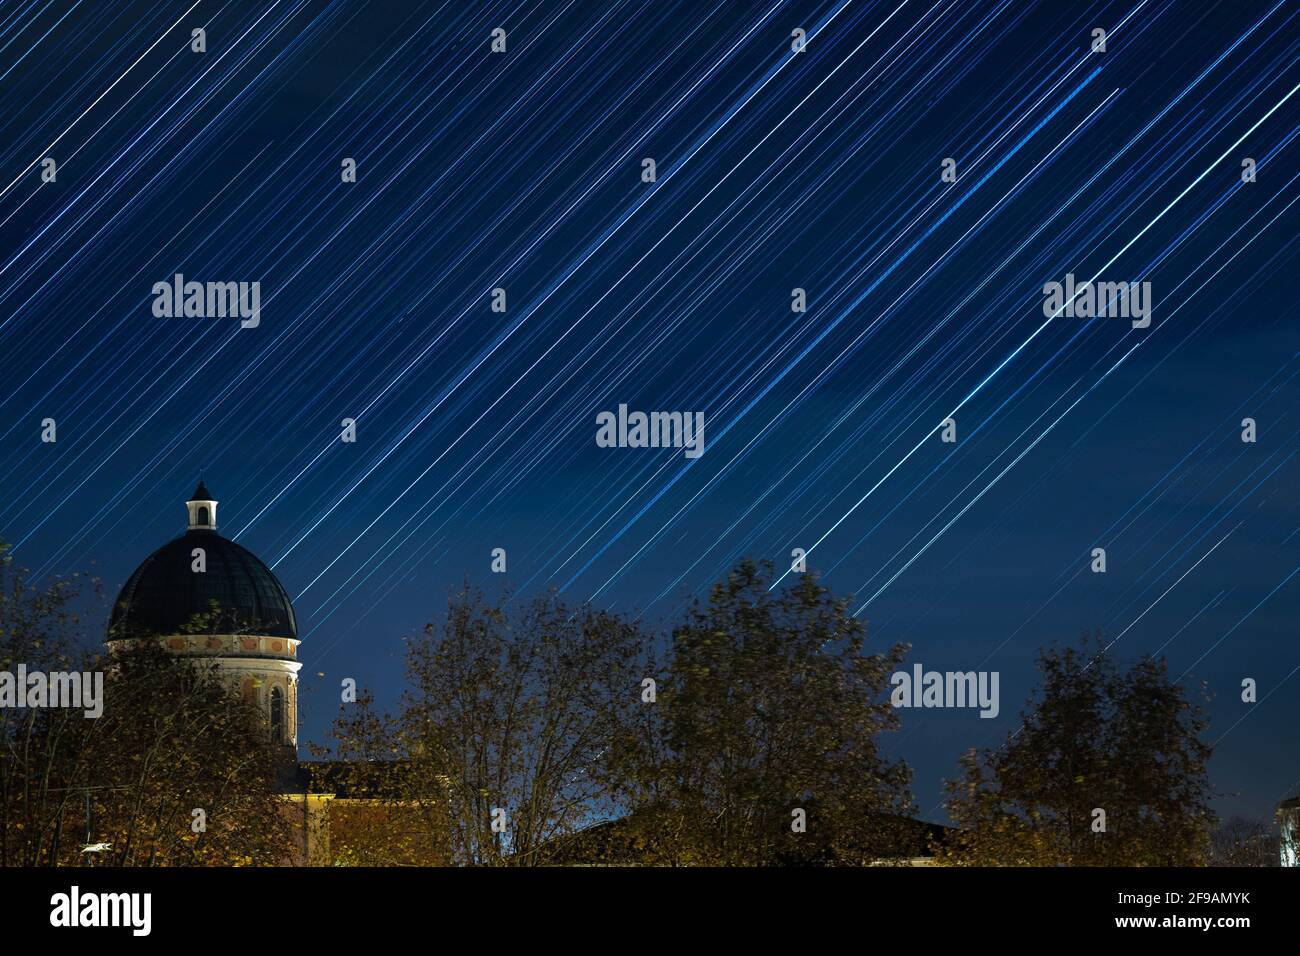 Starry night star trails view in Boretto, Emilia Romagna, Italy Stock Photo